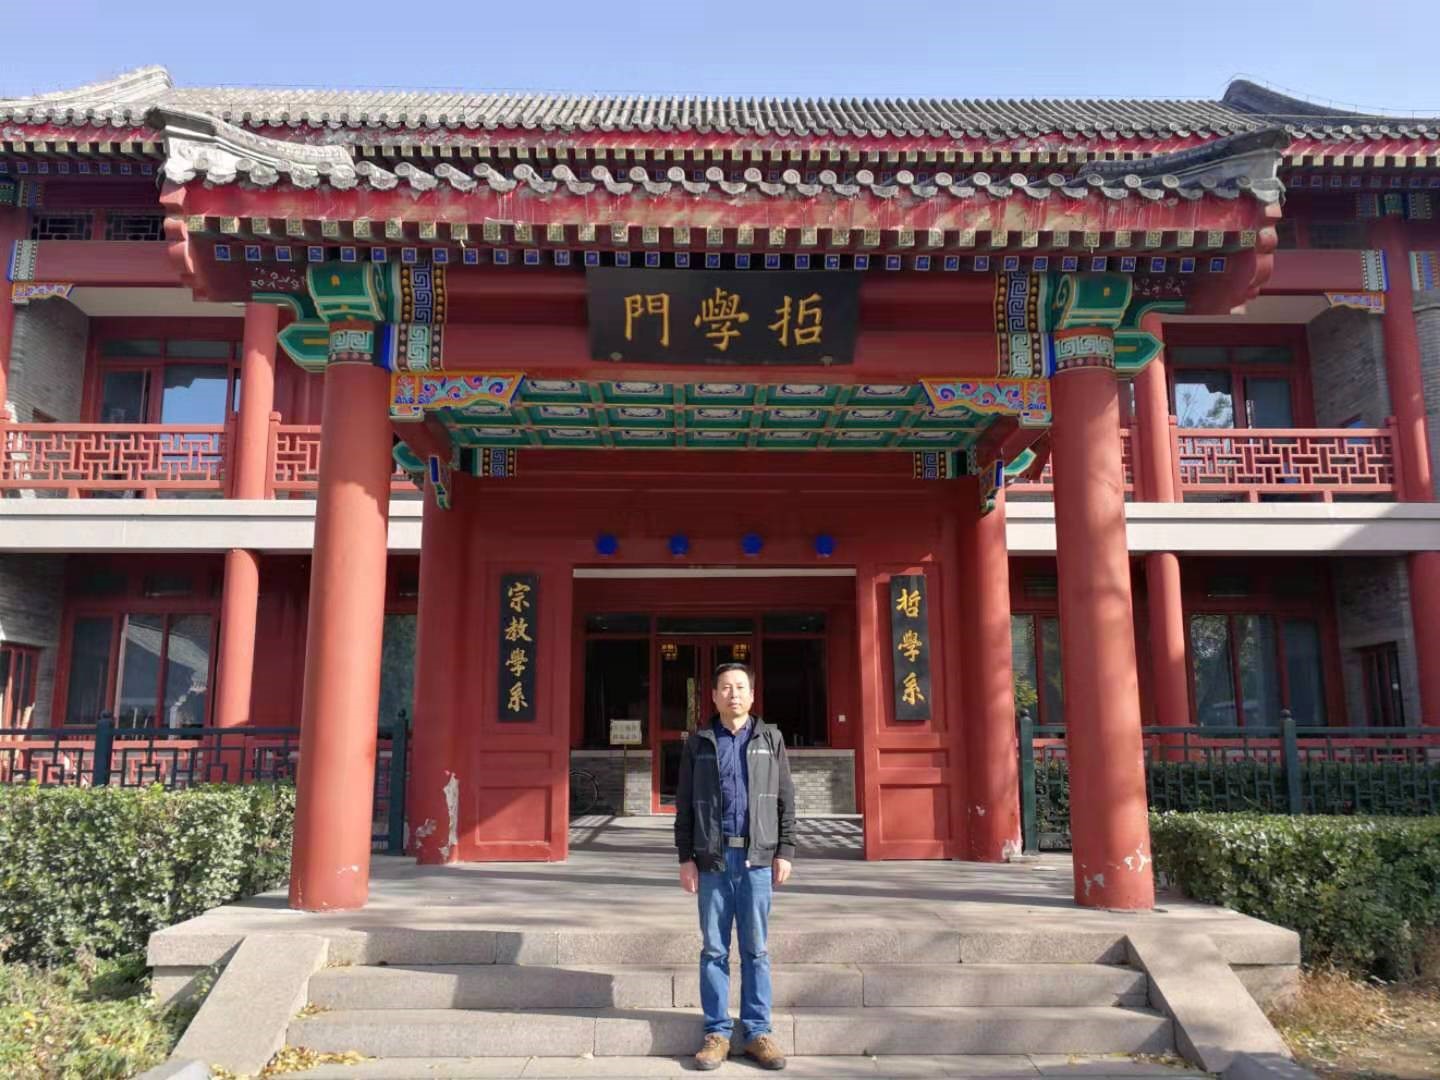 柏涵管理总经理、首席咨询师高宏斌应邀参加北京大学《如何做哲学——元哲学与哲学方法国际研讨会》